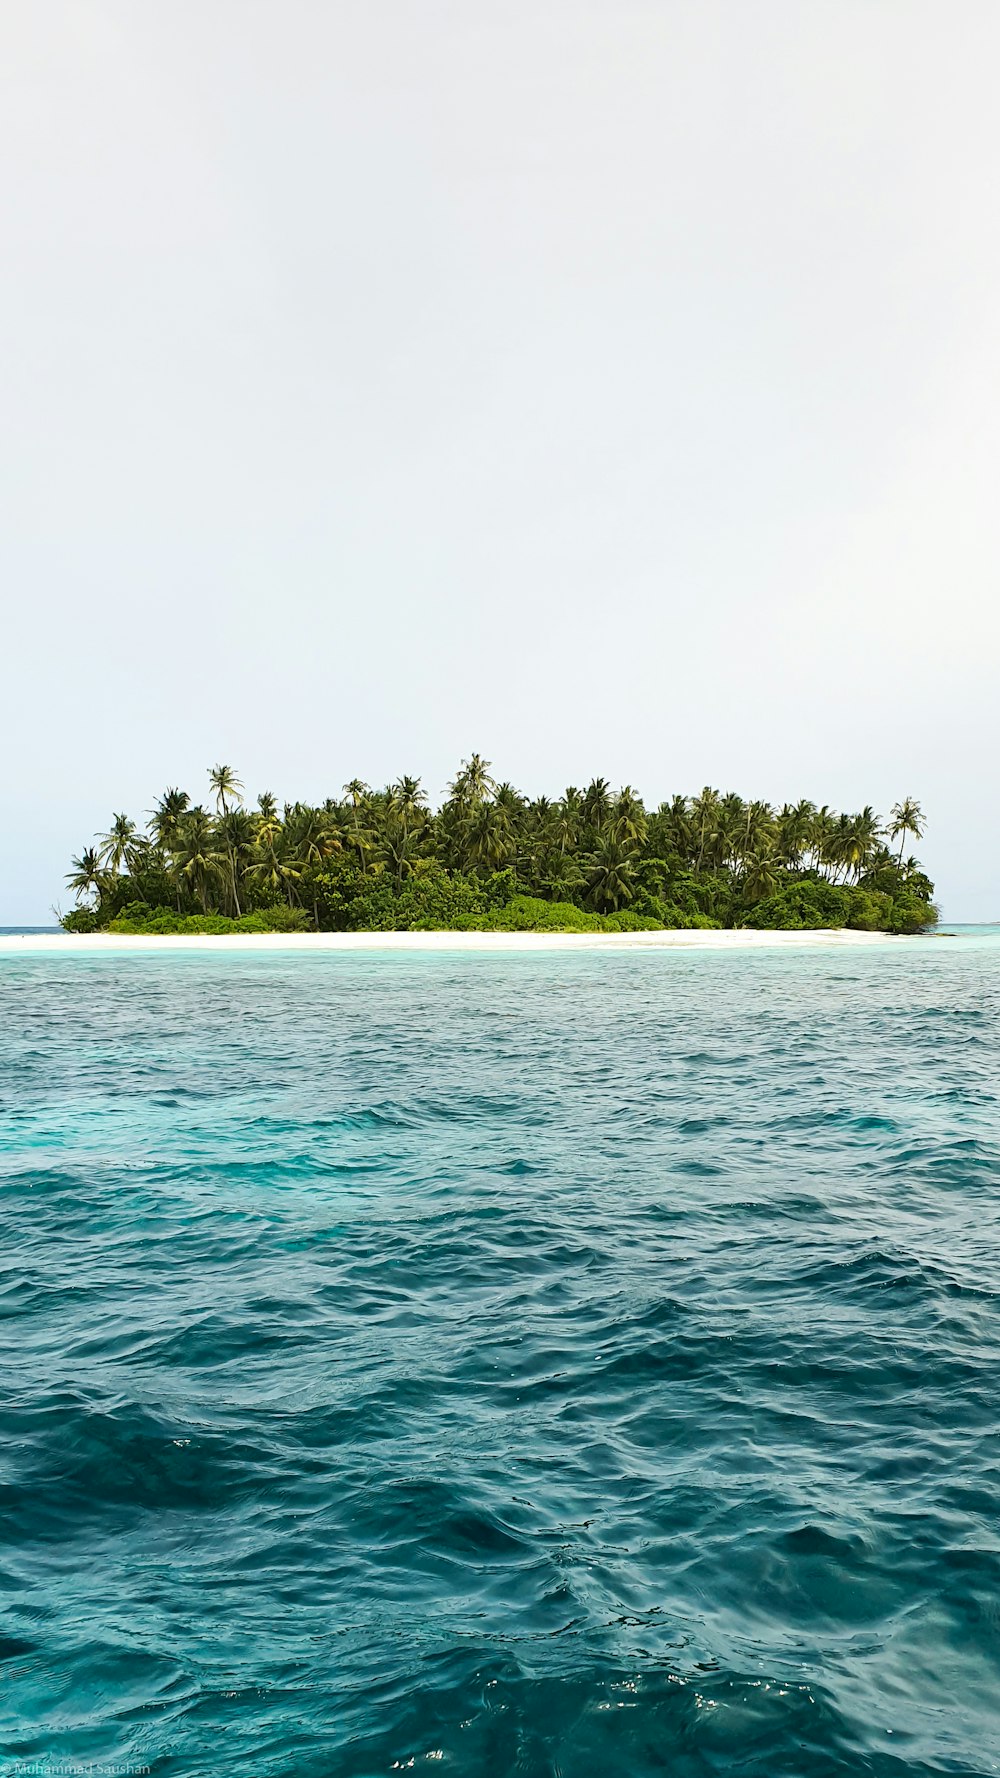 alberi verdi sull'isola circondata dall'acqua durante il giorno